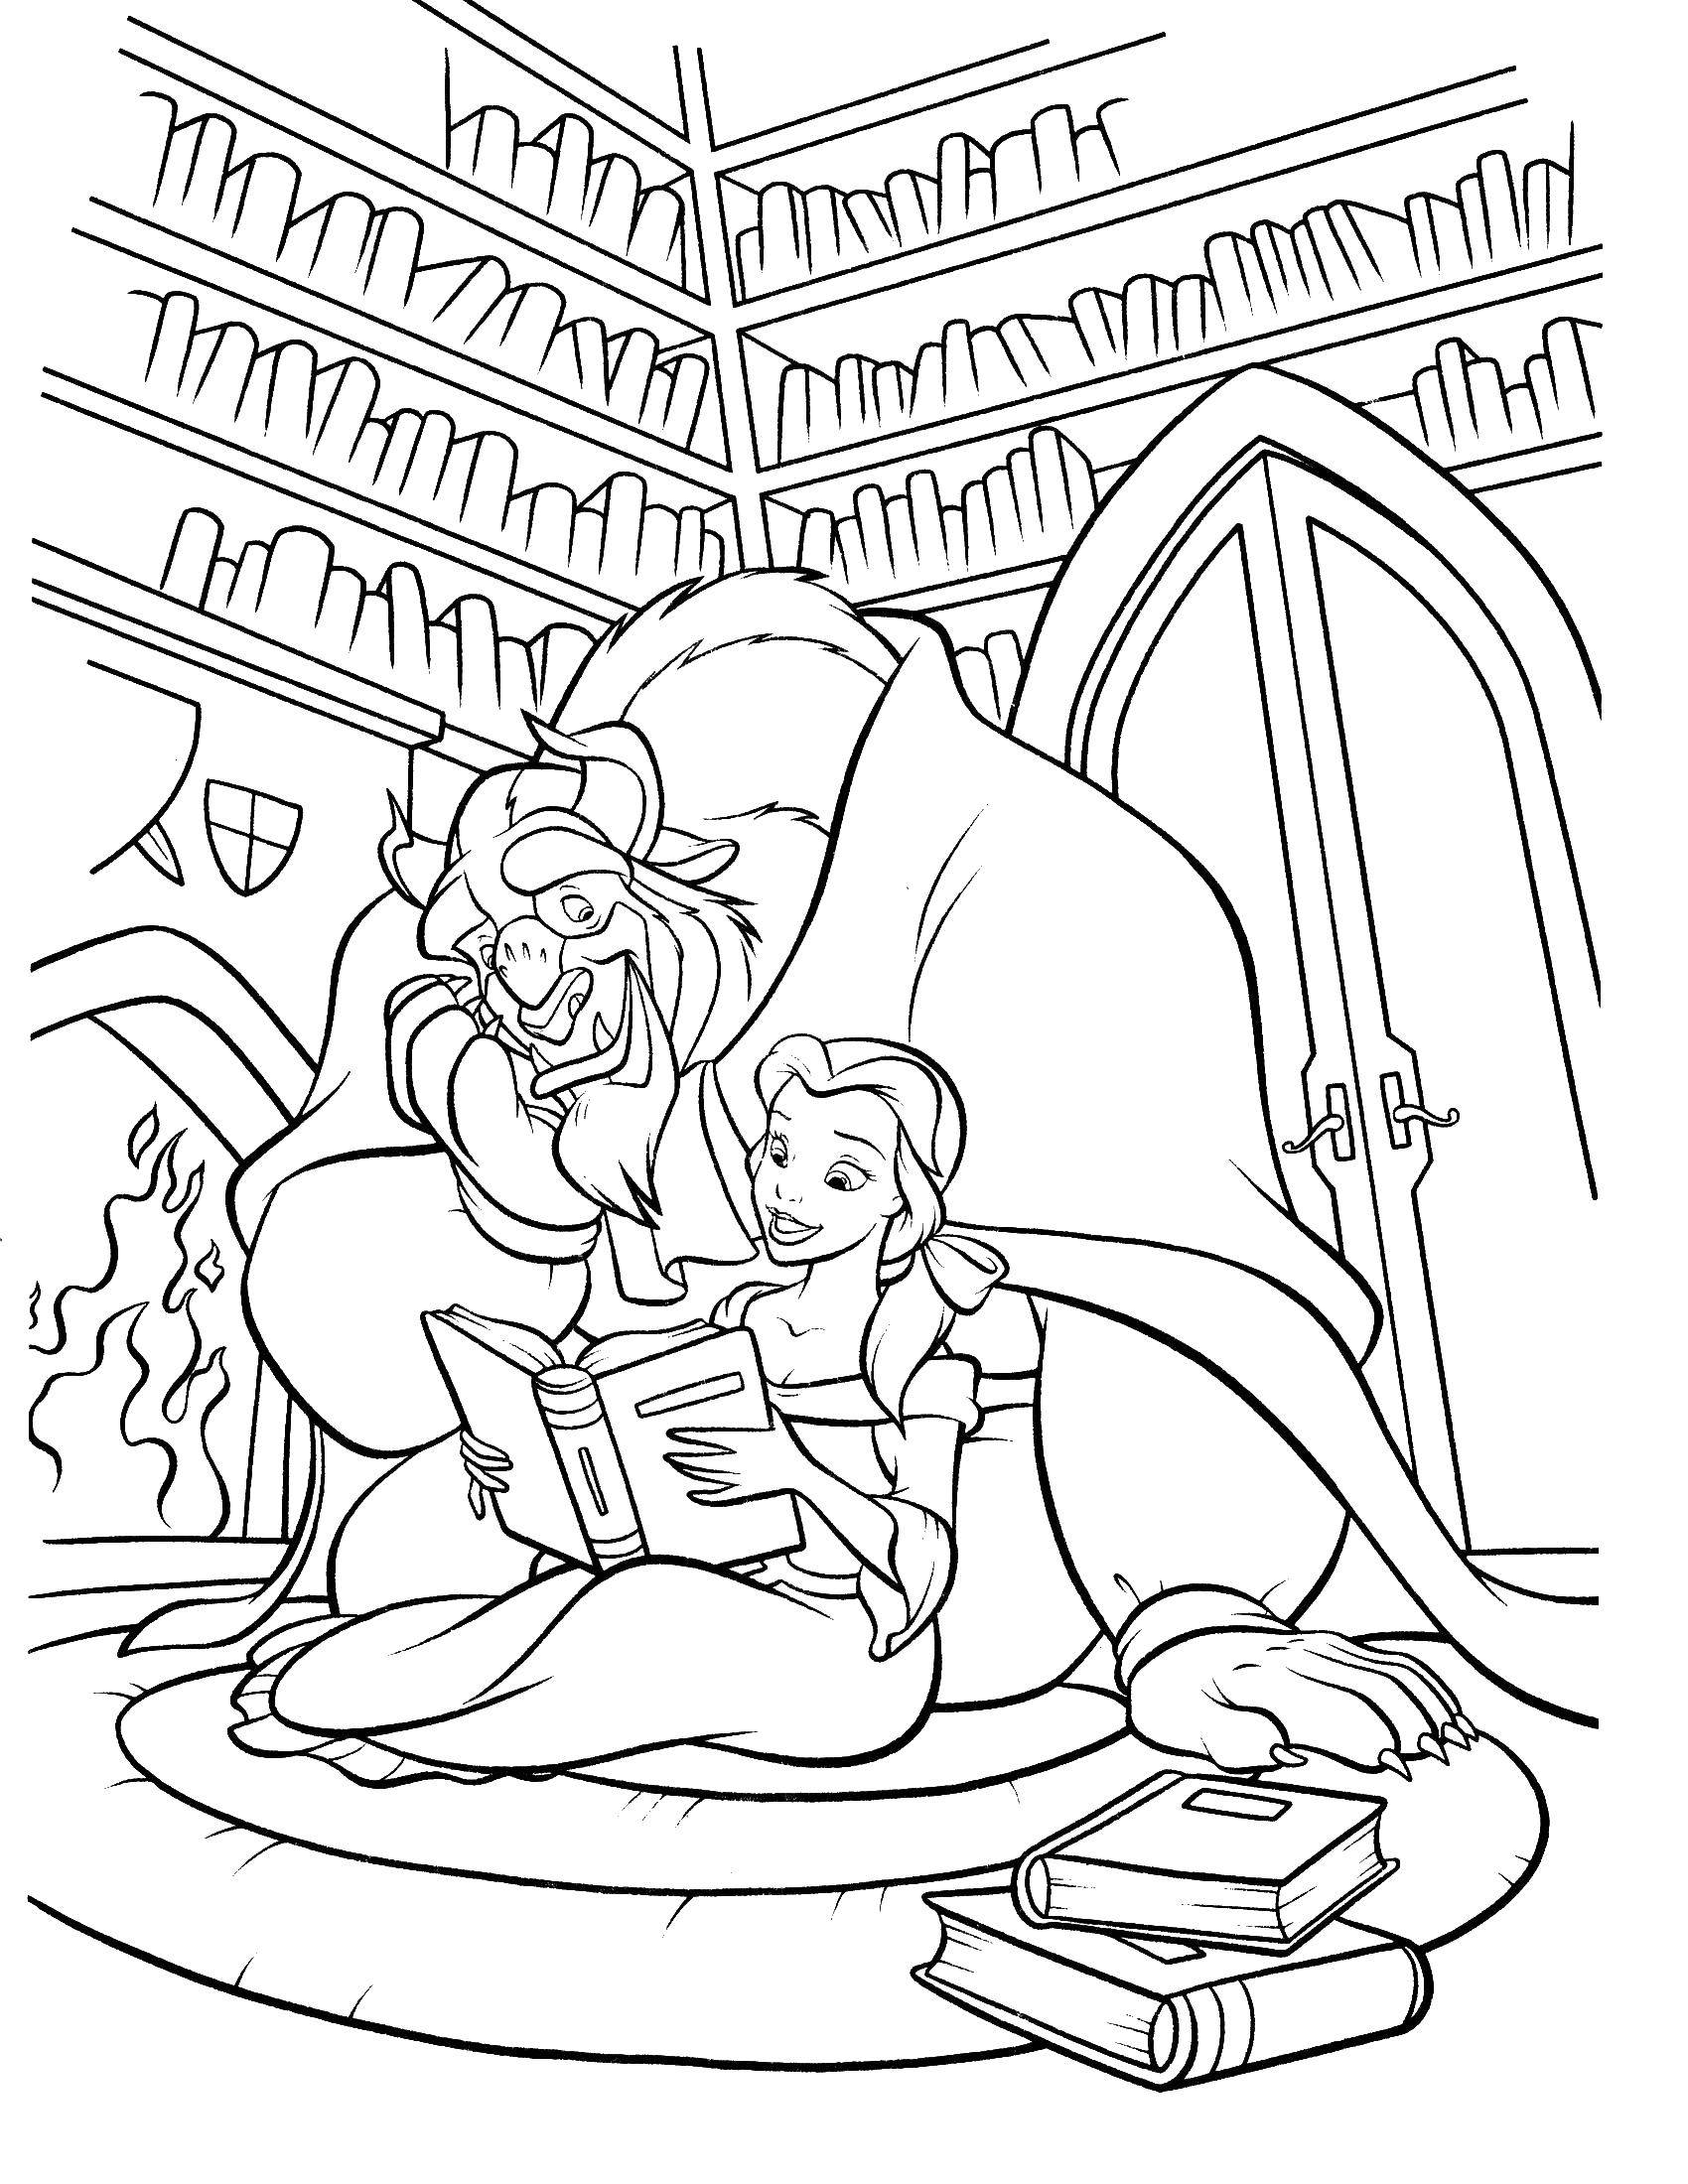 Раскраски из мультфильма Красавица и чудовище для детей  Красавица белл и чудовище читают внигу вместе